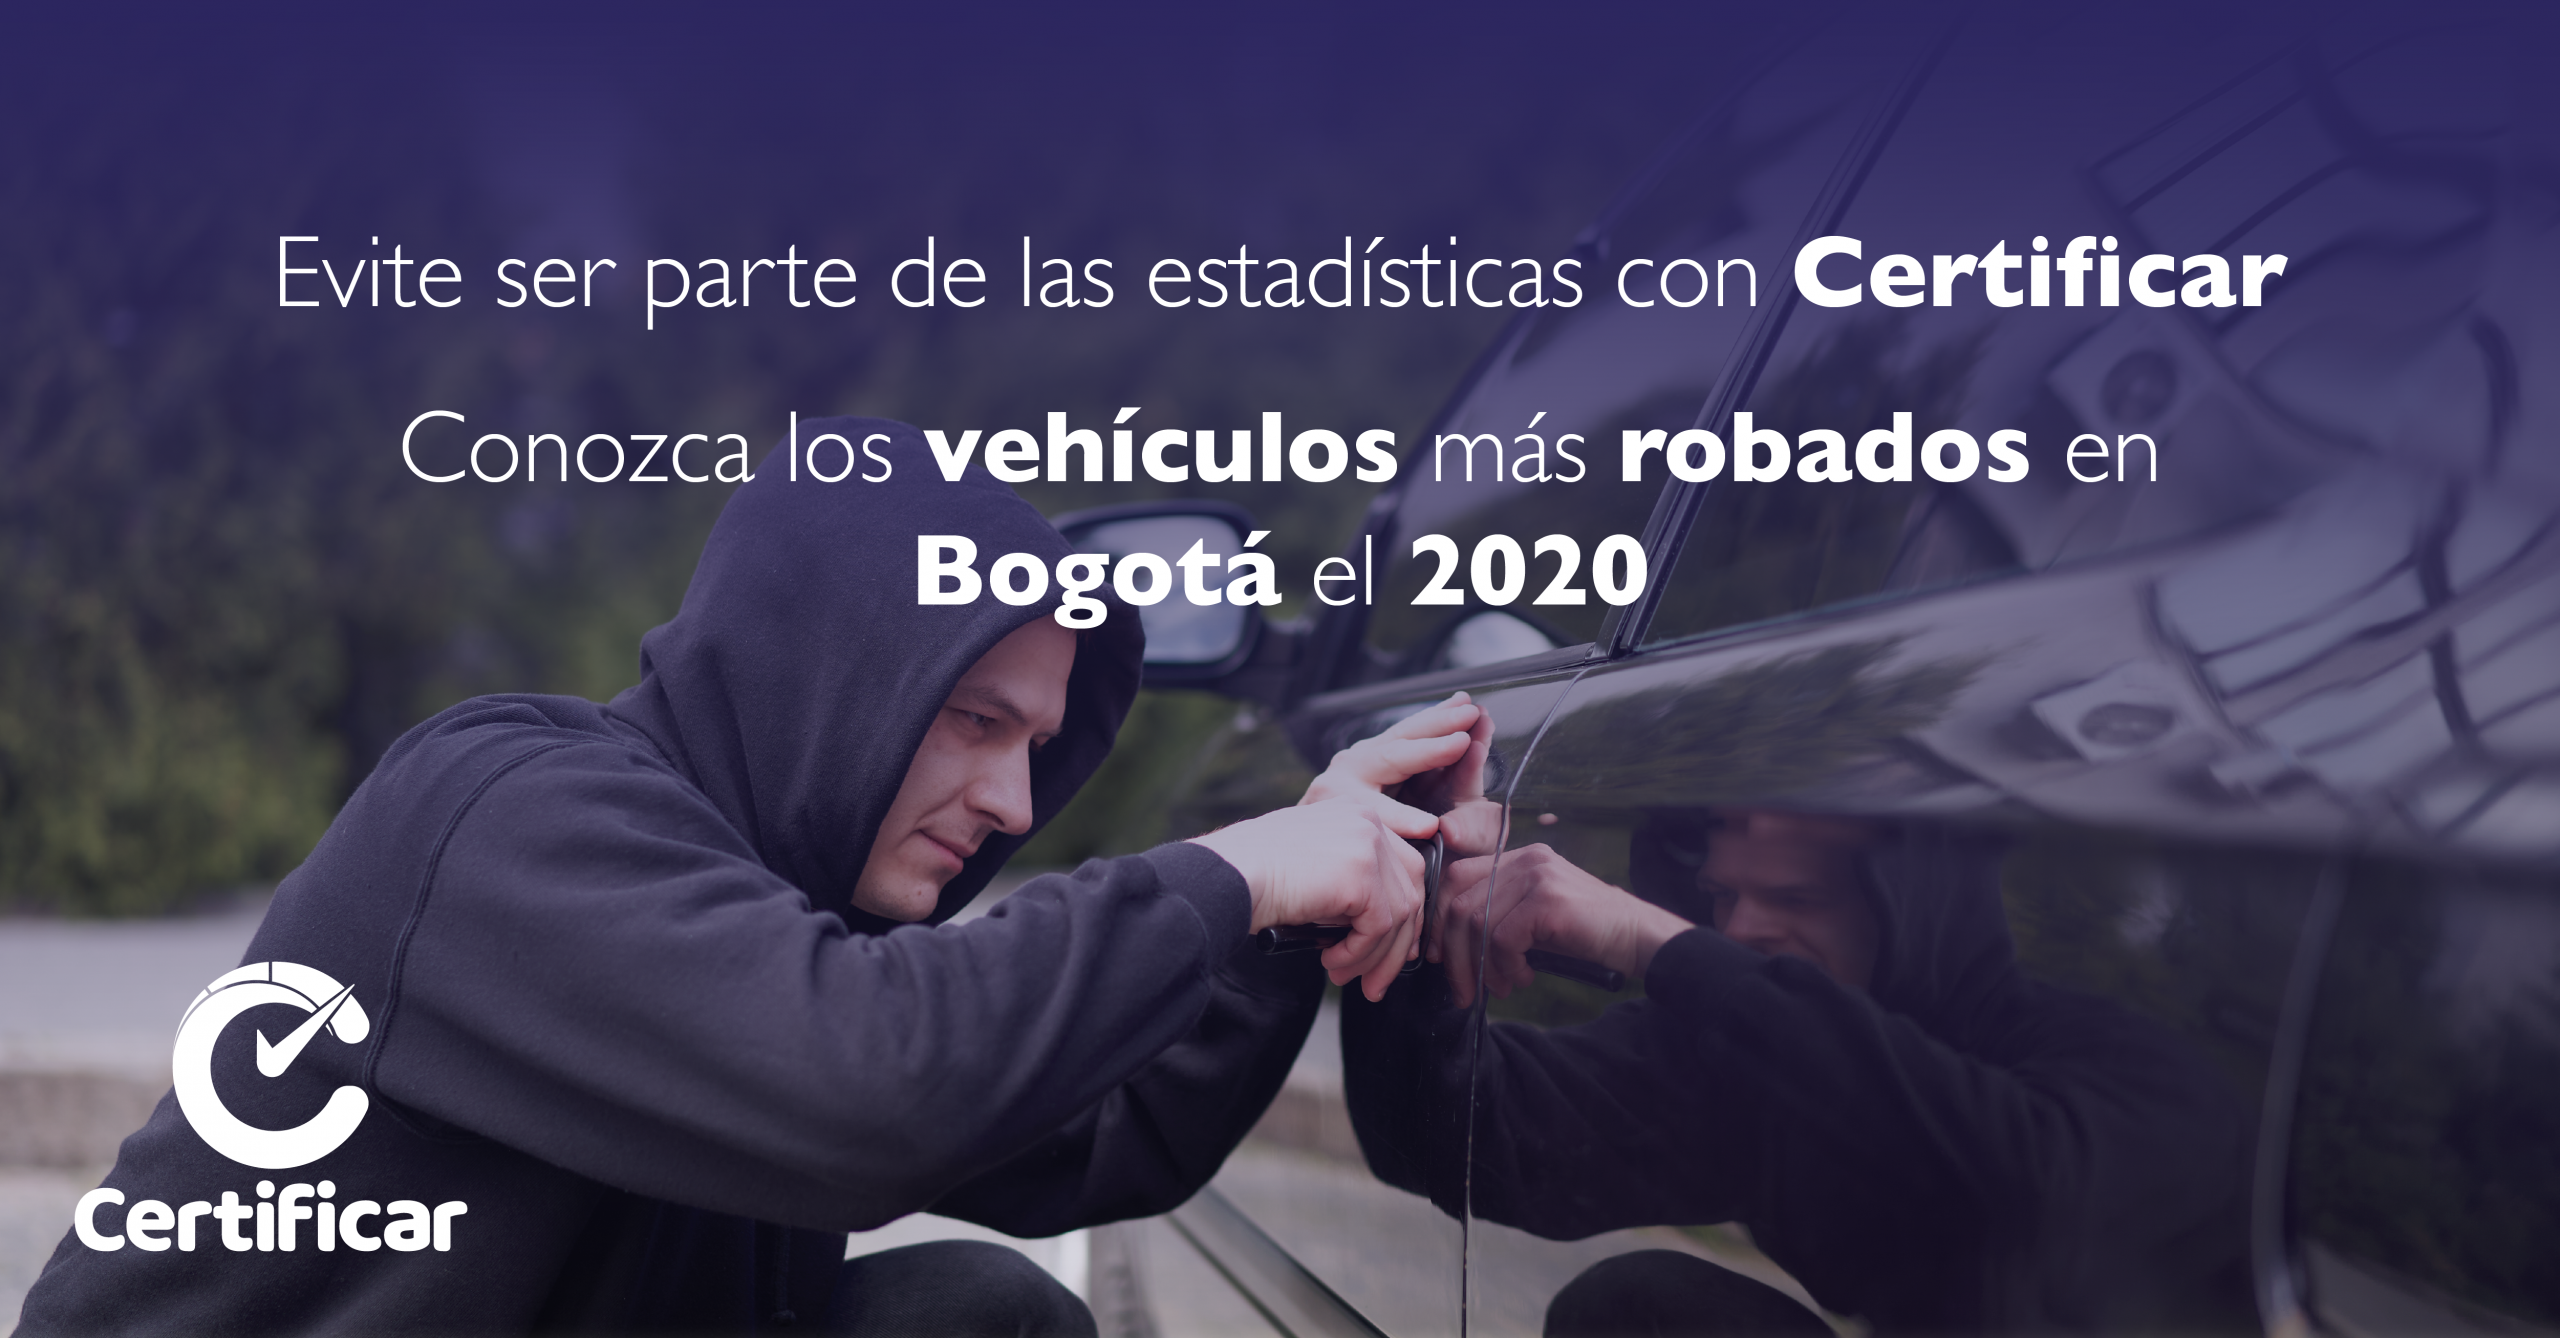 Vehículos más robados en Bogotá el 2020